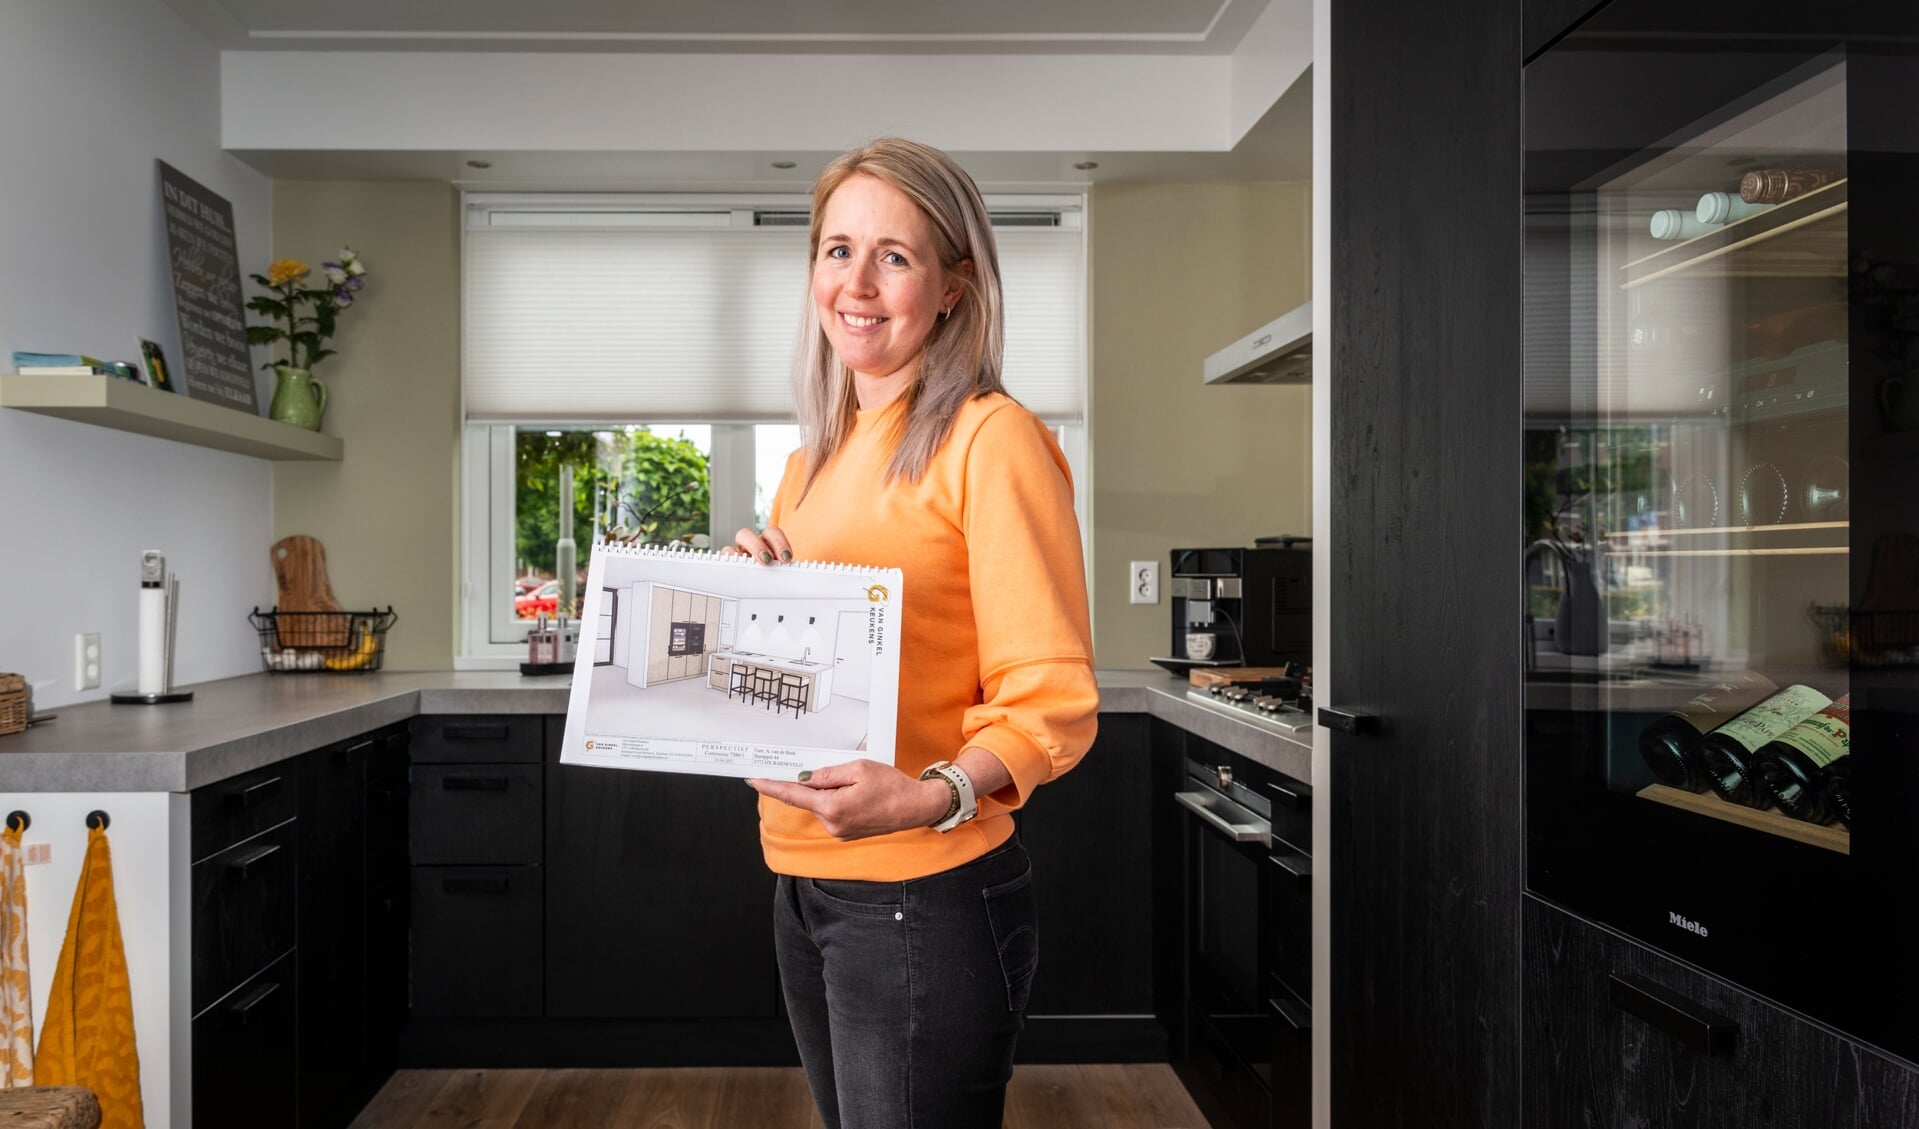 Gonda van de Beek in haar huidige keuken van Van Ginkel Keukens. In haar hand het ontwerp van de nieuwe keuken.